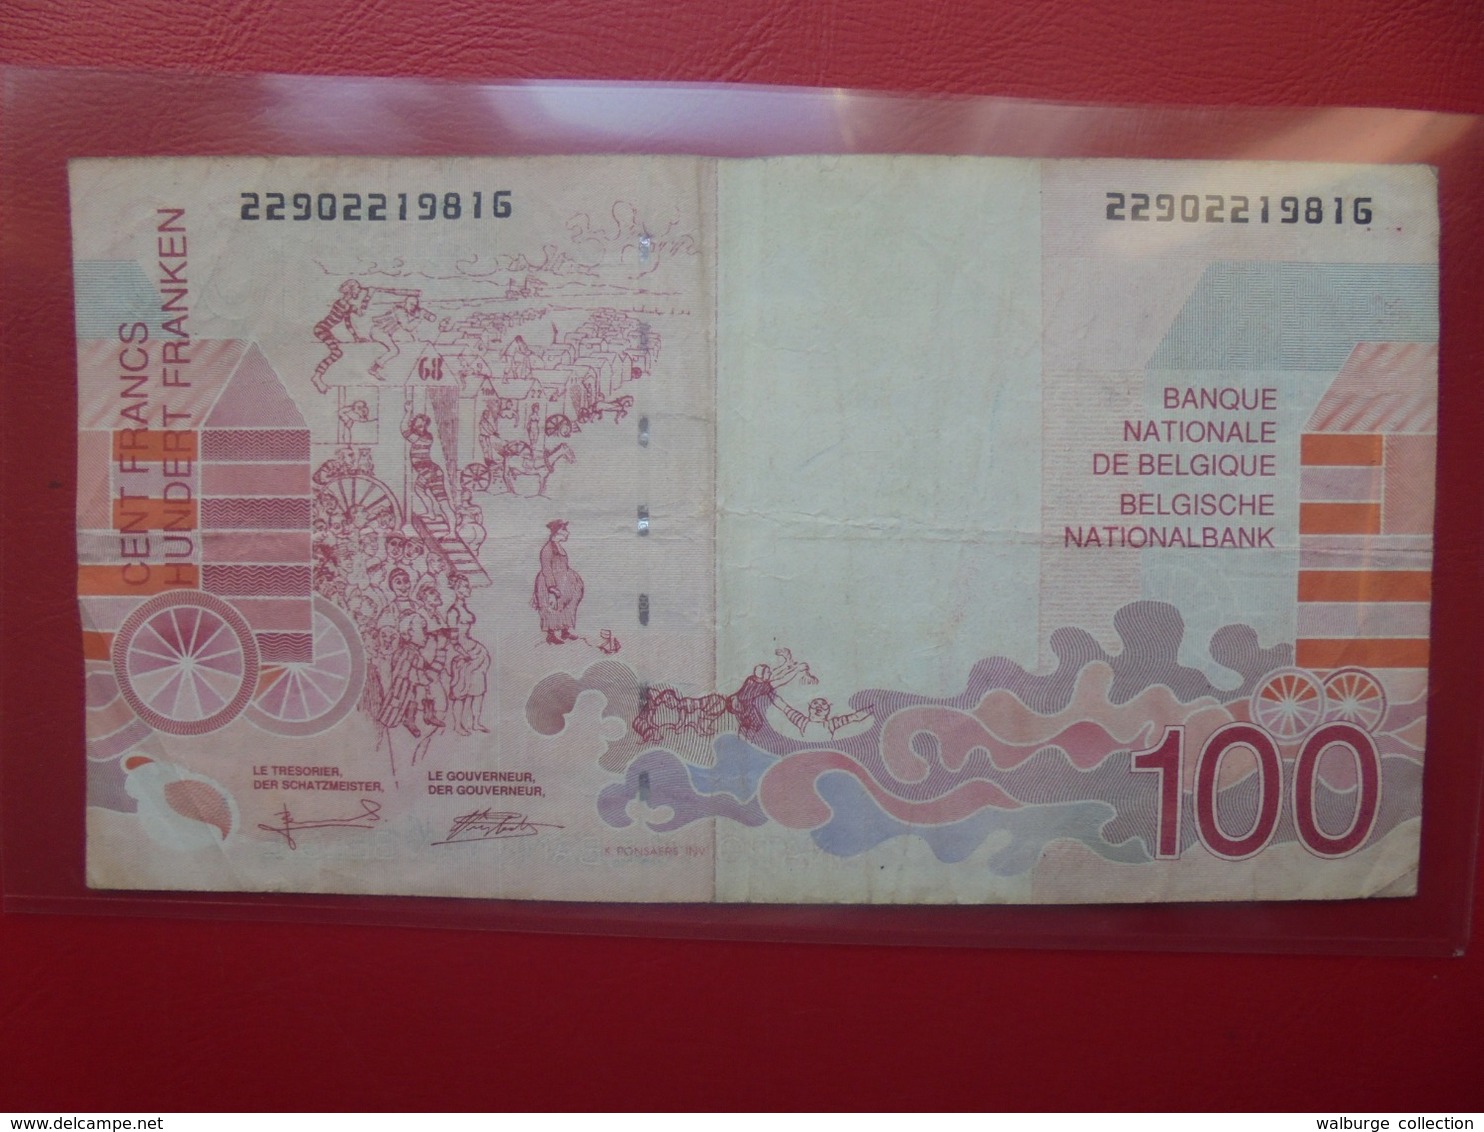 BELGIQUE 100 FRANCS 1995-2001 CIRCULER - 100 Francs